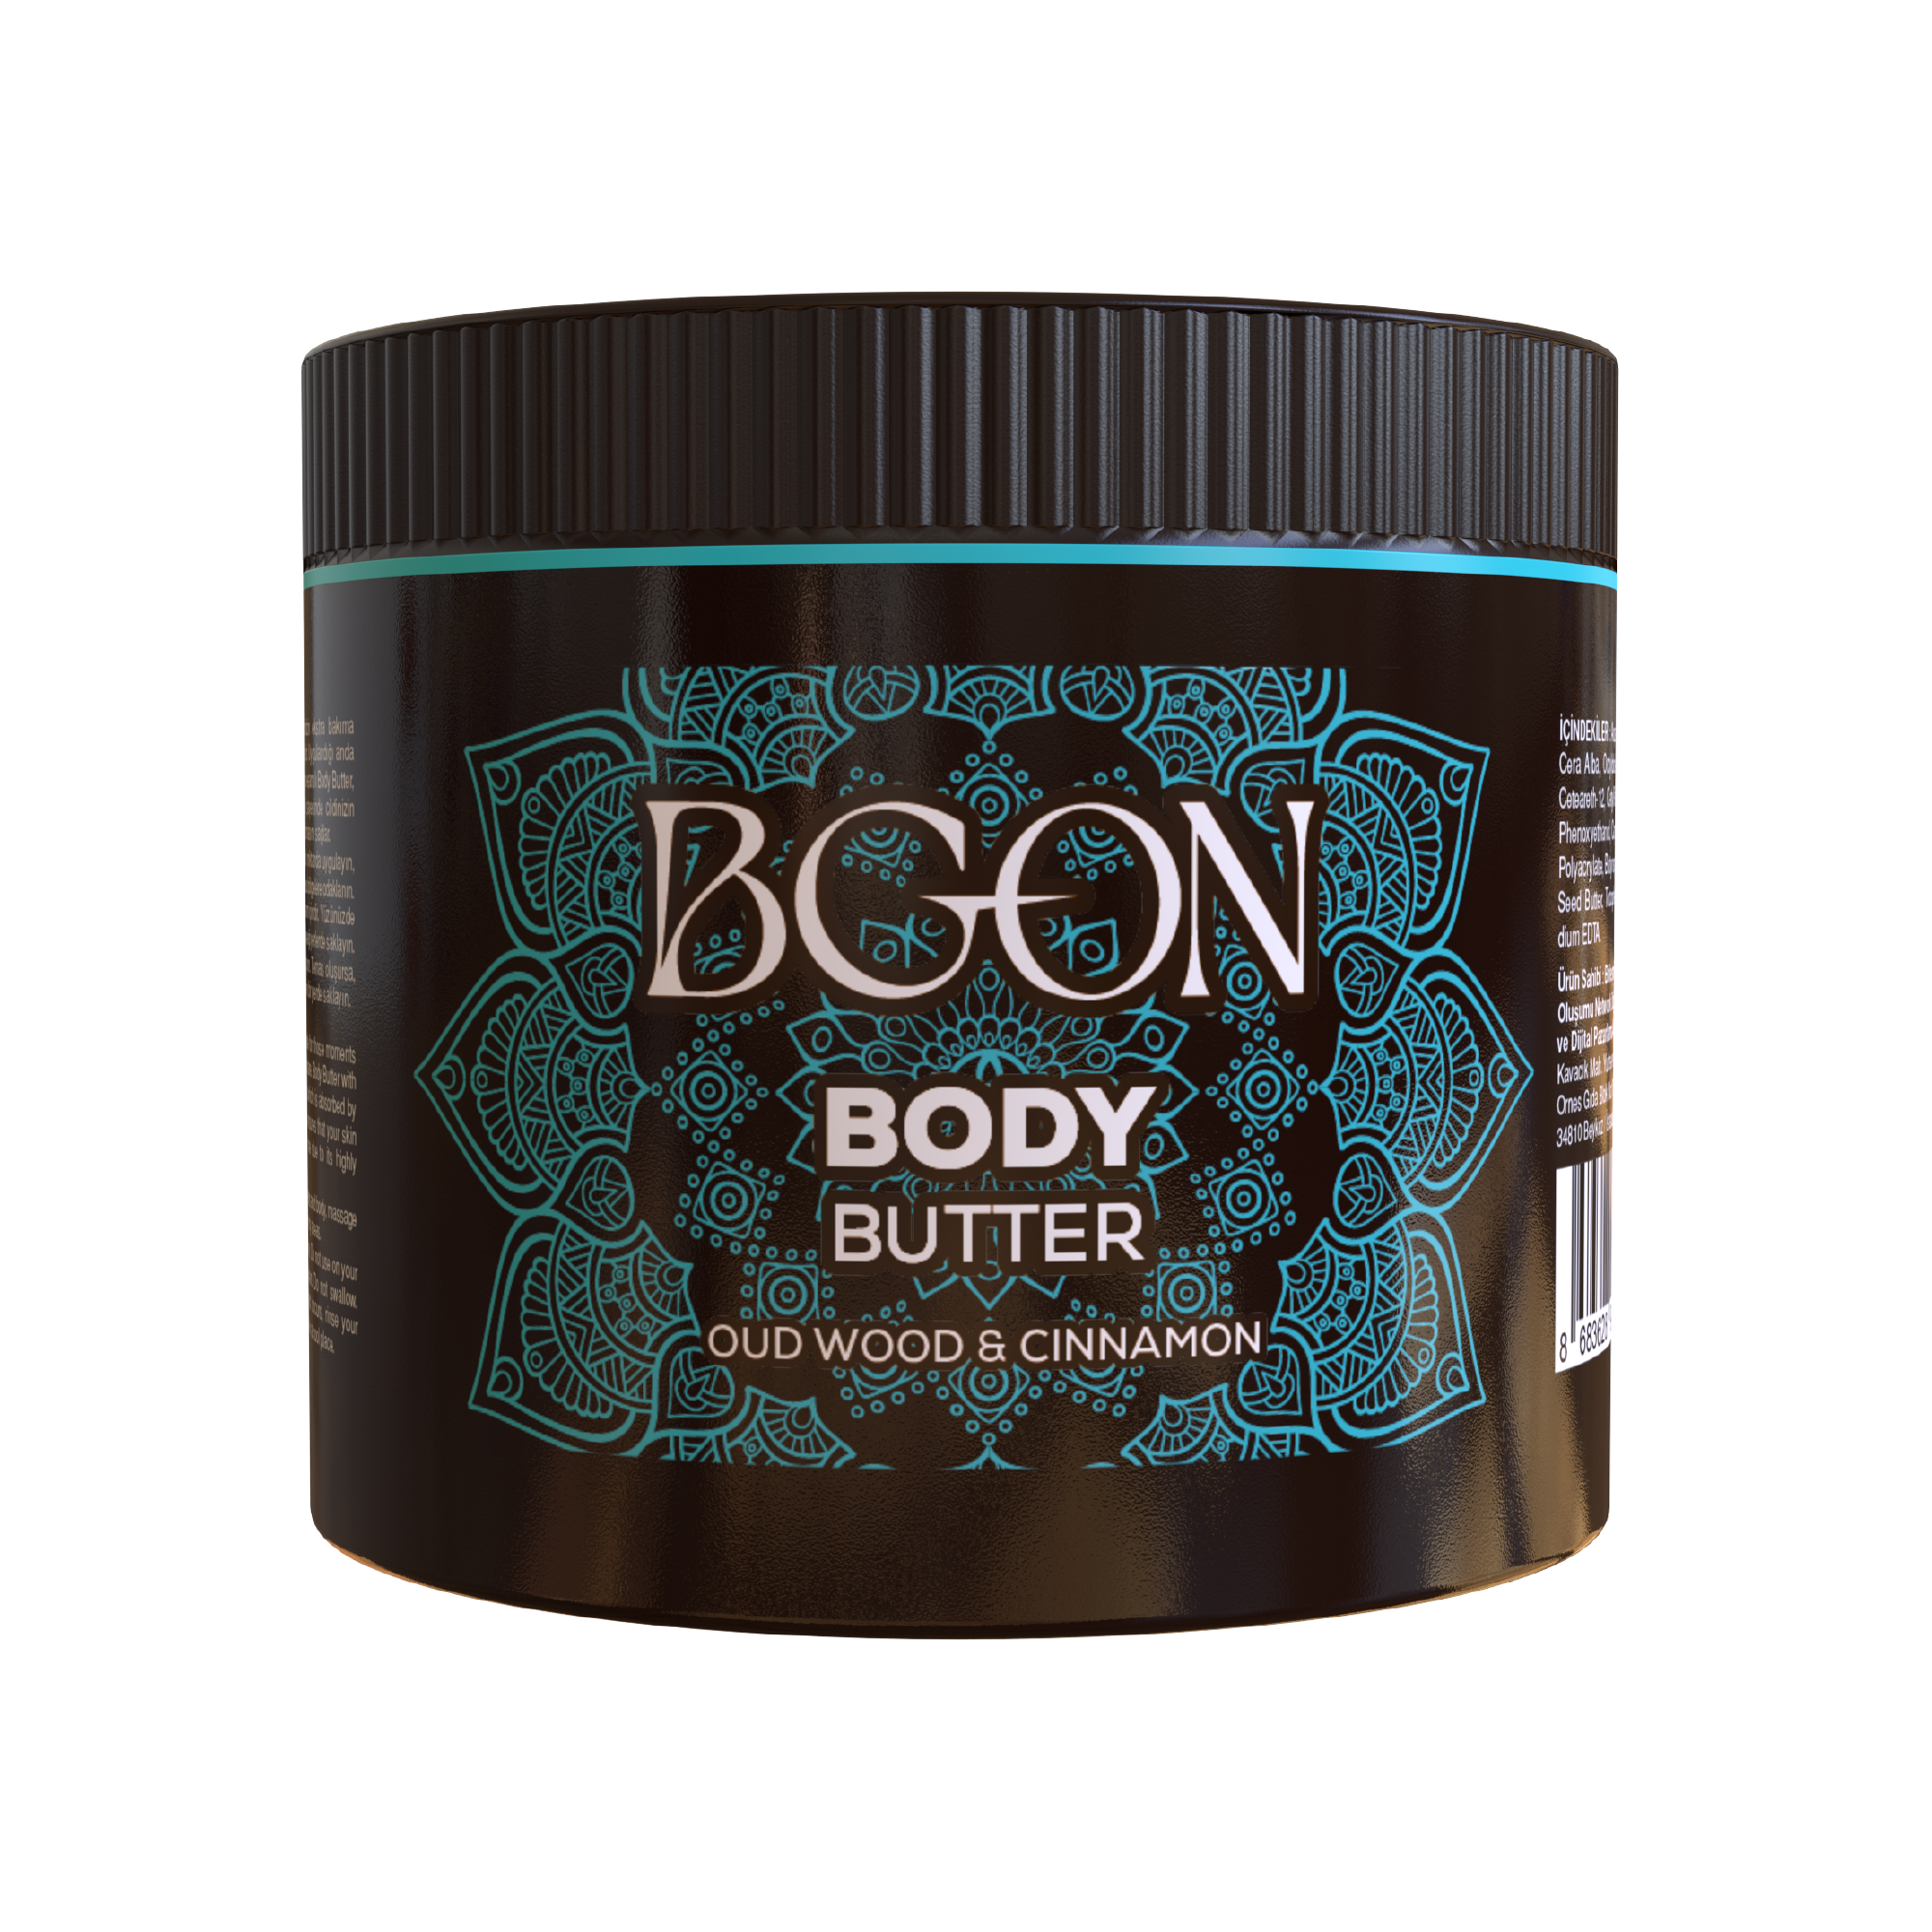 BGON Body Butter - Öd Ağacı & Tarçın - 100ml